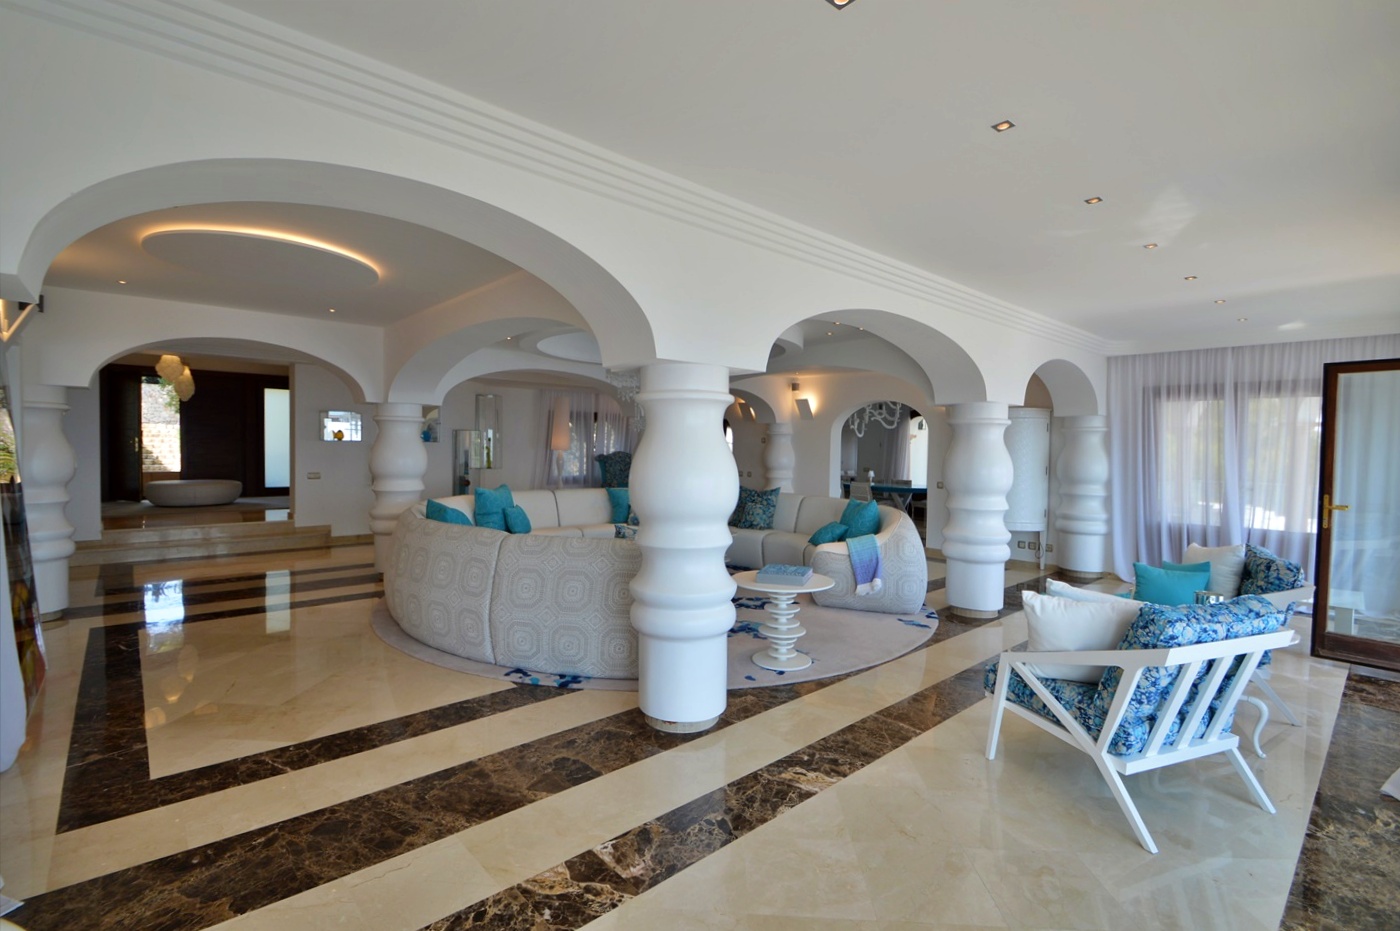 Villa de luxe en première ligne avec vue exceptionnelle sur la mer